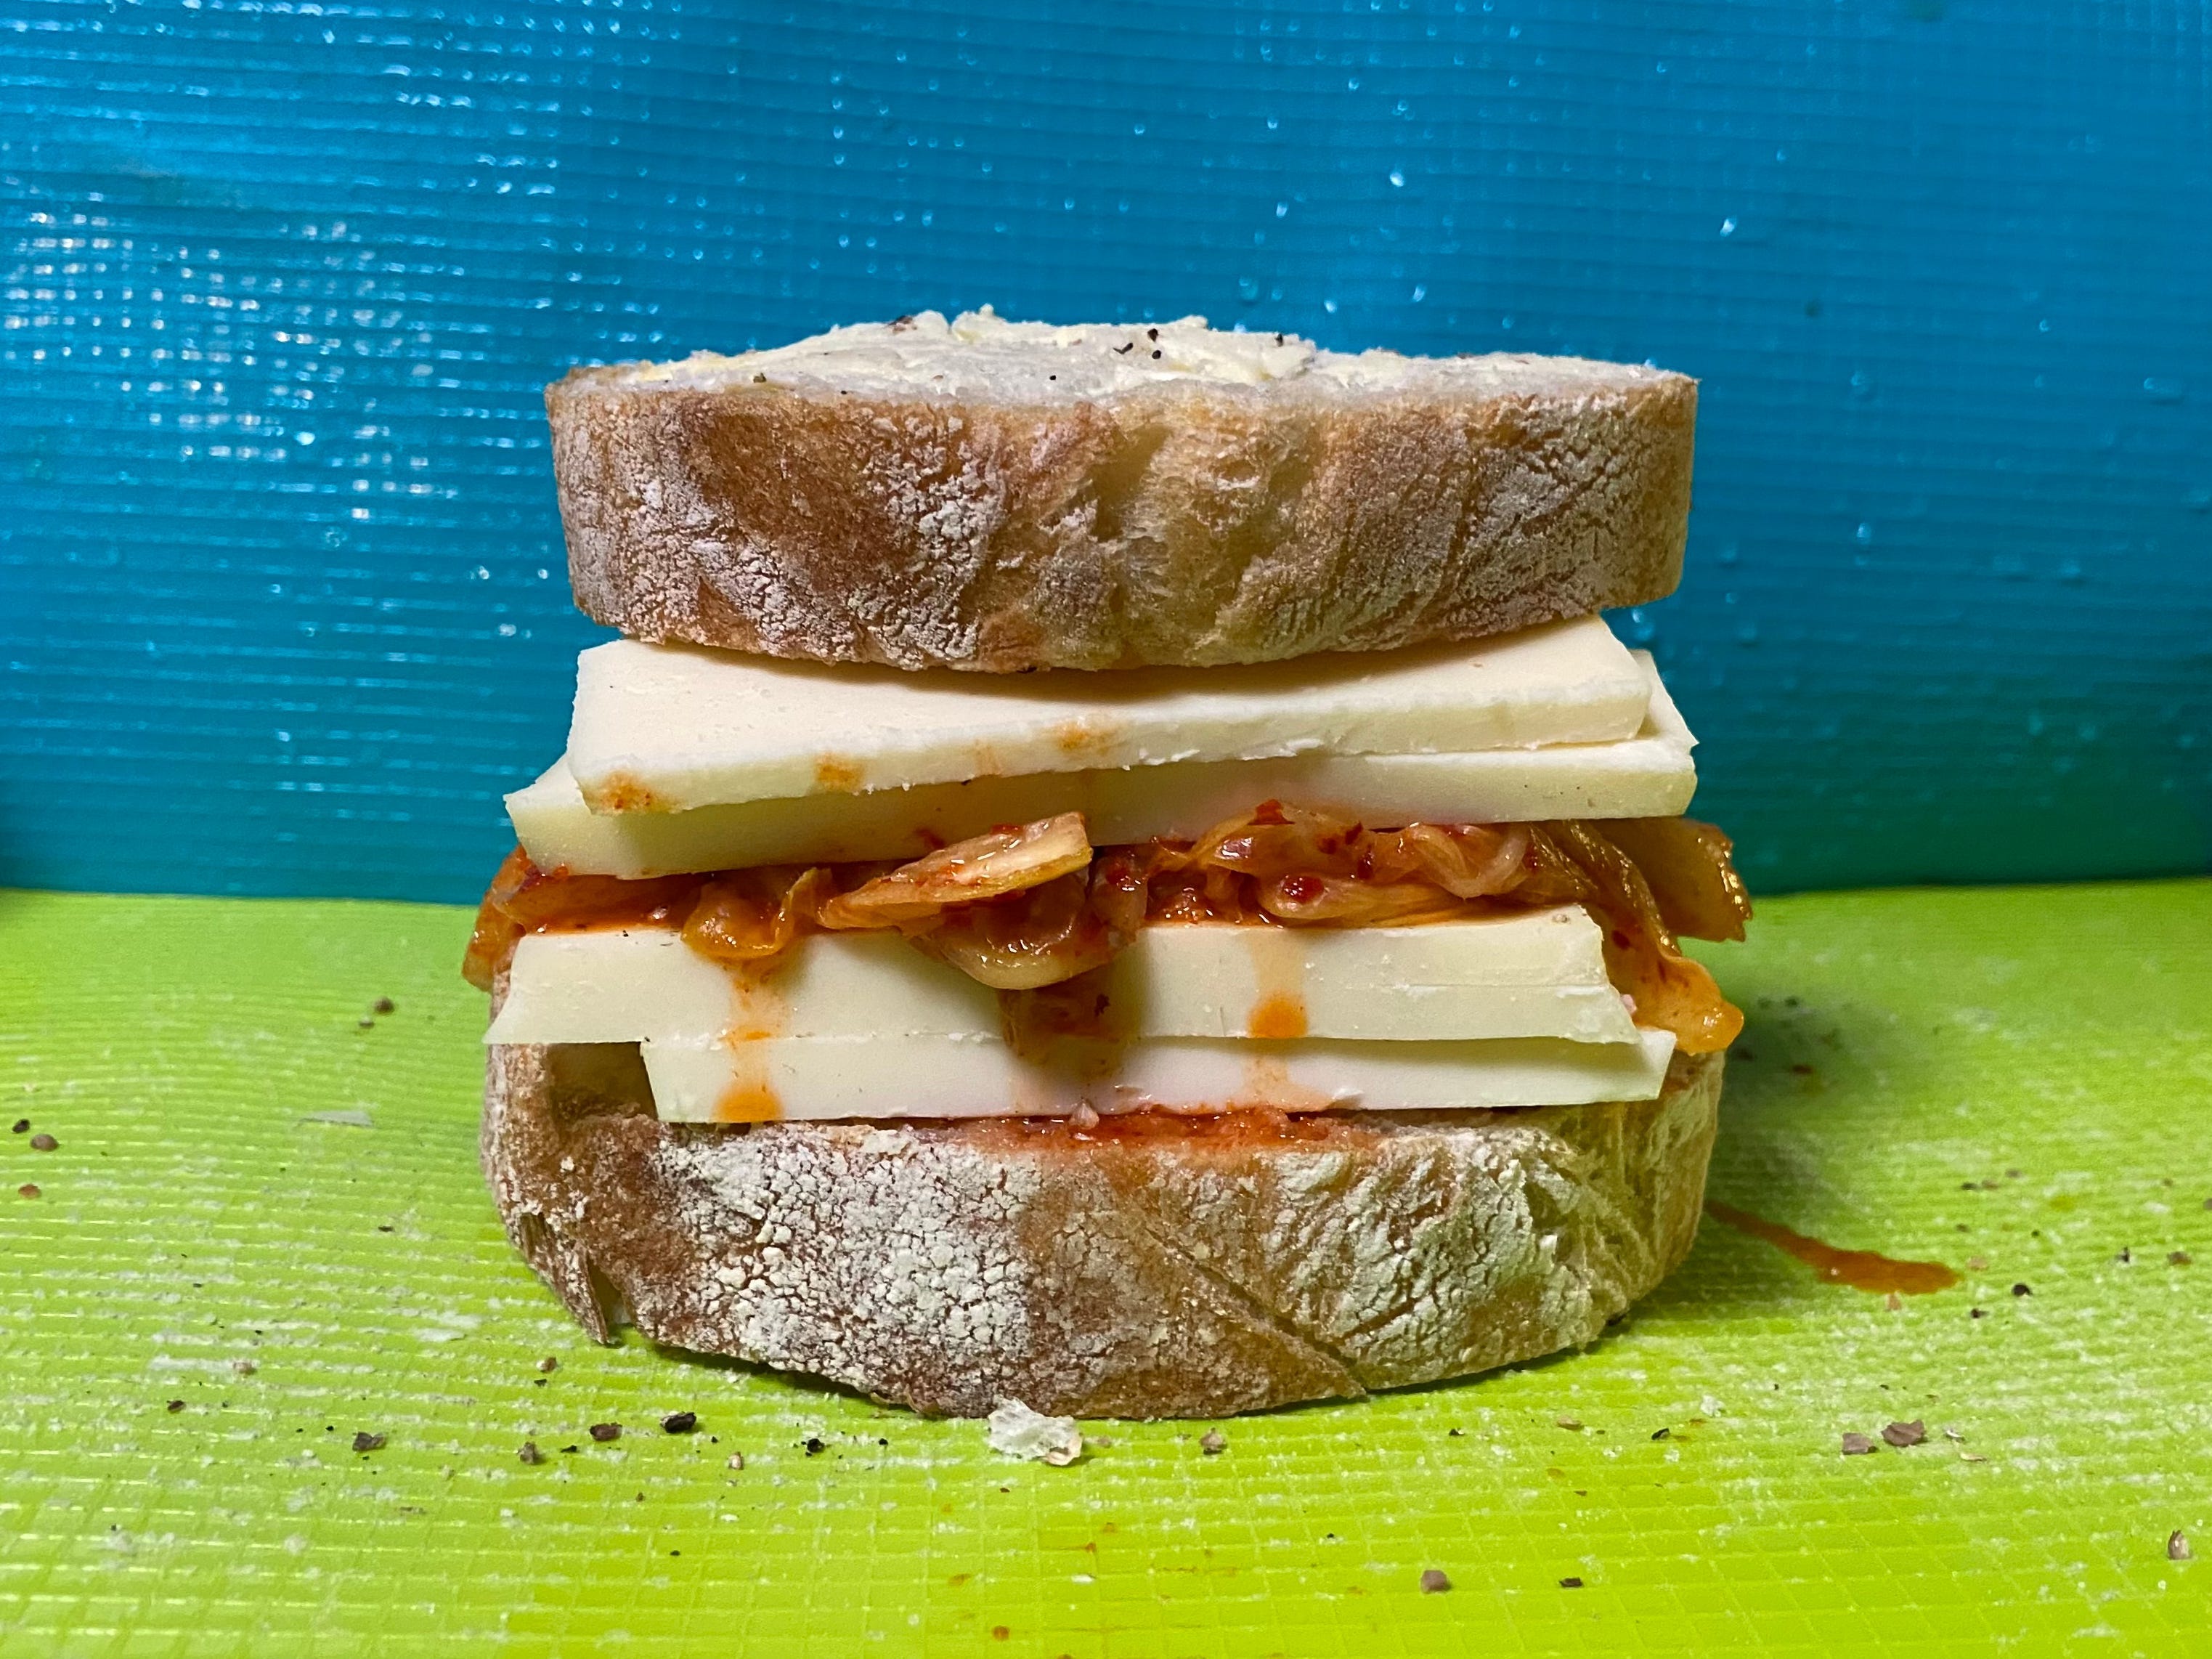 Das zusammengesetzte Sandwich zeigt dickes Brot, Käsestreifen und tropfendes Kimchi.